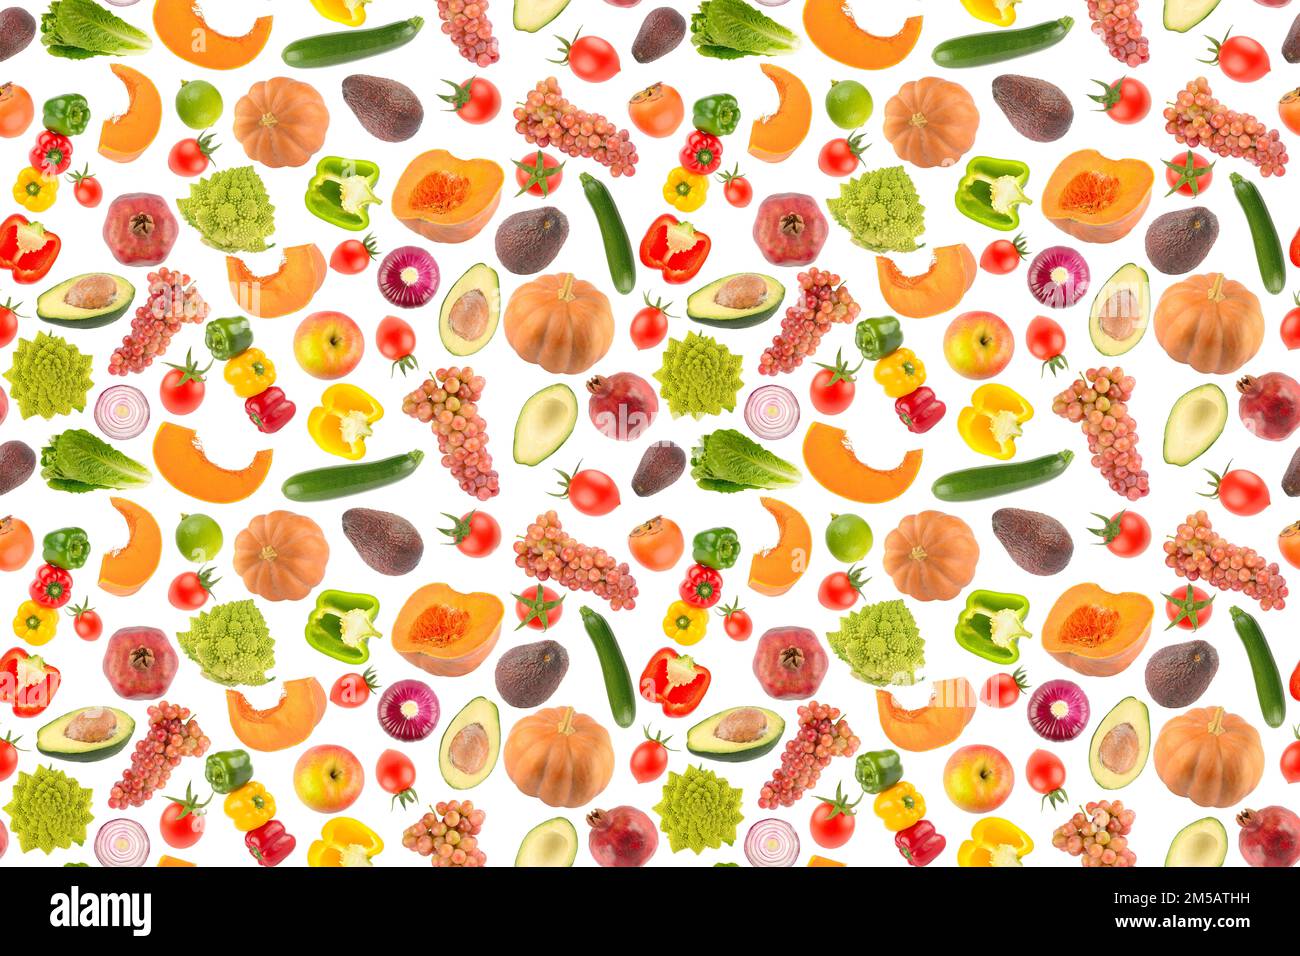 Motif sans couture de fruits et légumes de grande taille, isolé sur fond blanc. Texture des aliments. Banque D'Images